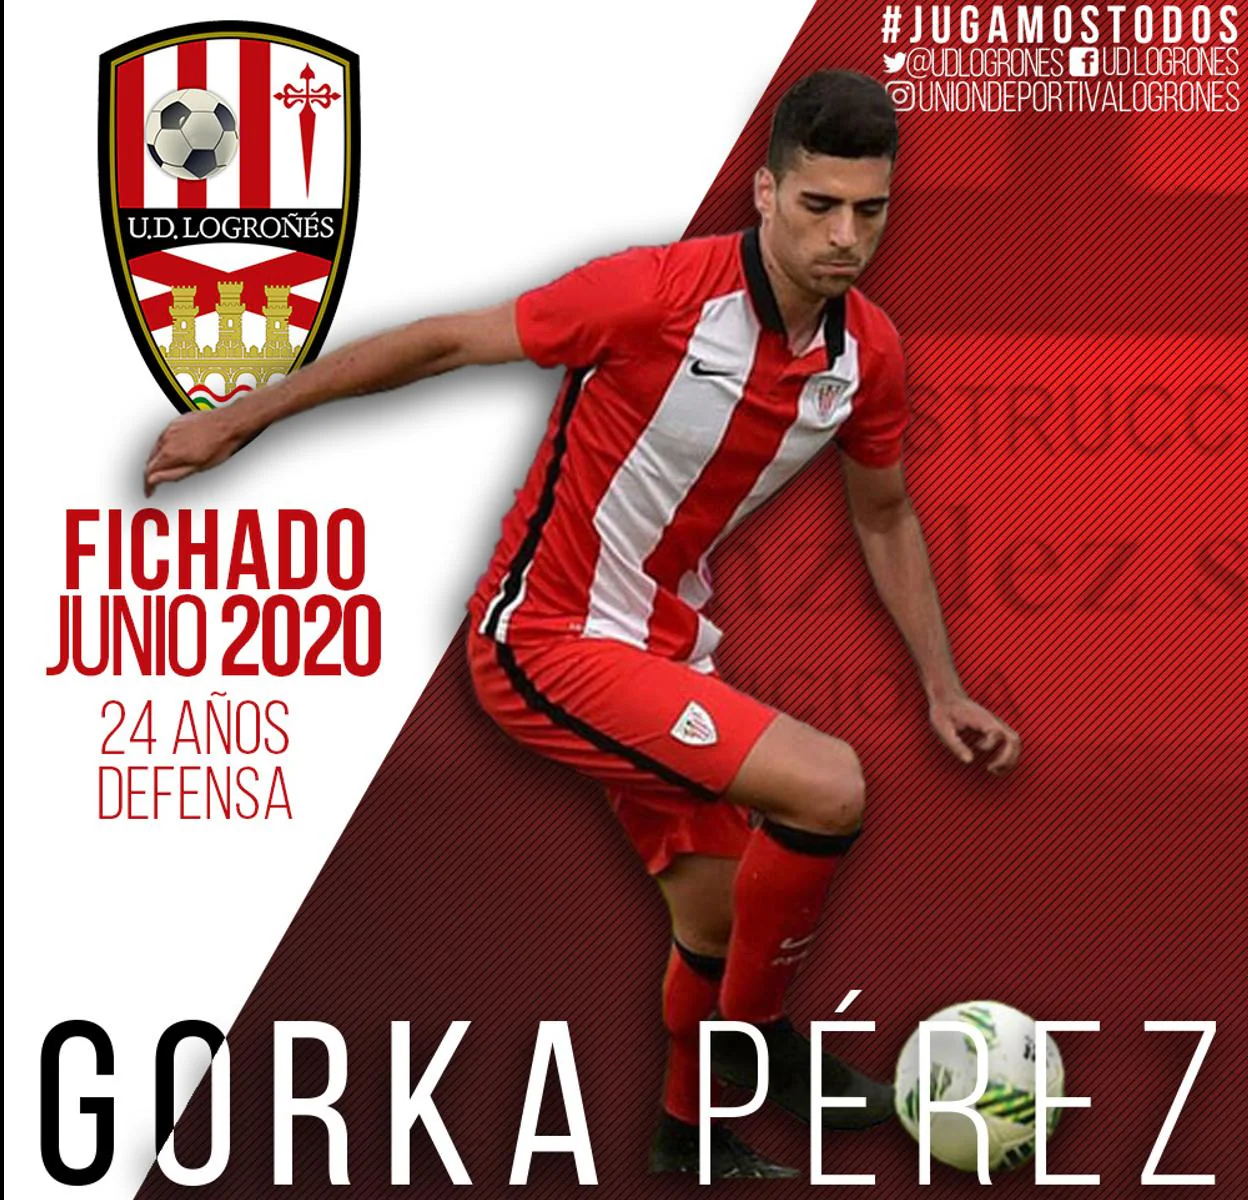 La UDL ficha al defensa Gorka Pérez procedente del Bilbao Athletic 